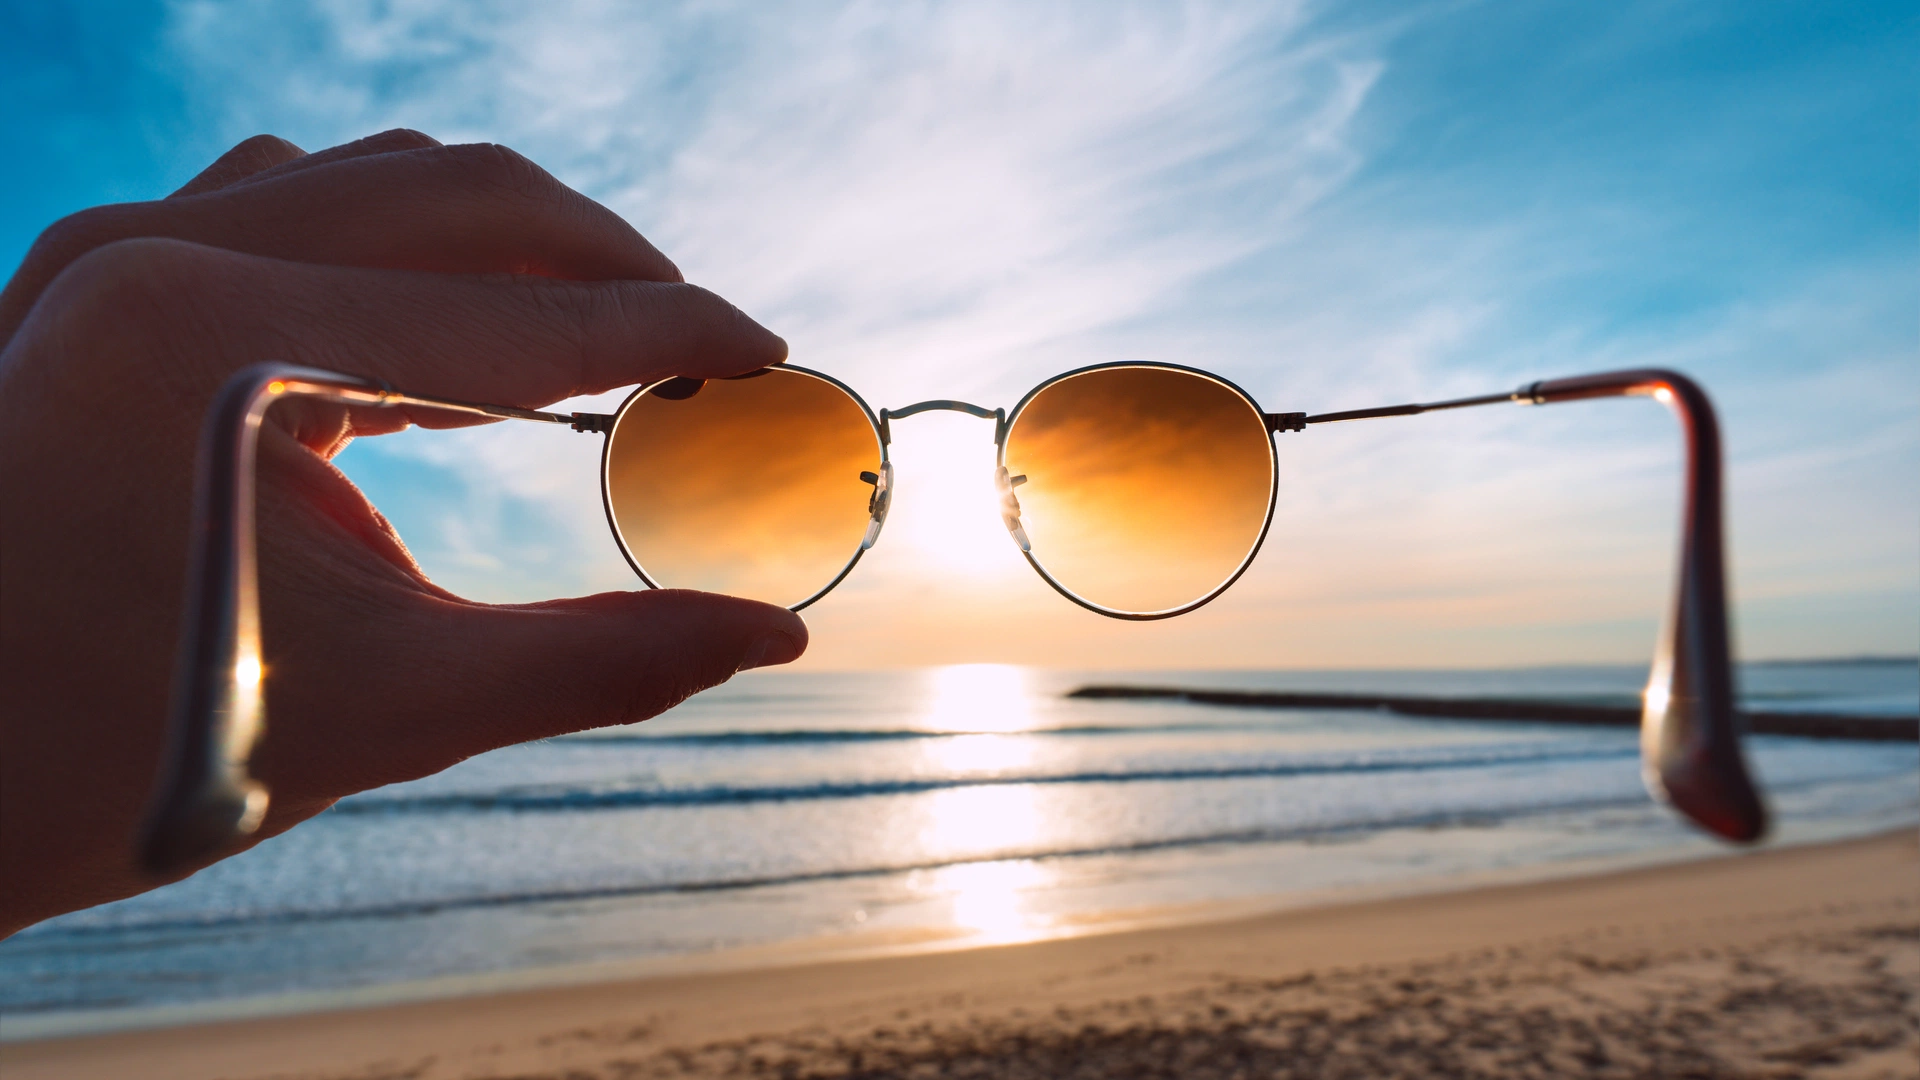 Врач-офтальмолог рассказала, какие солнцезащитные очки безопасны для здоровья